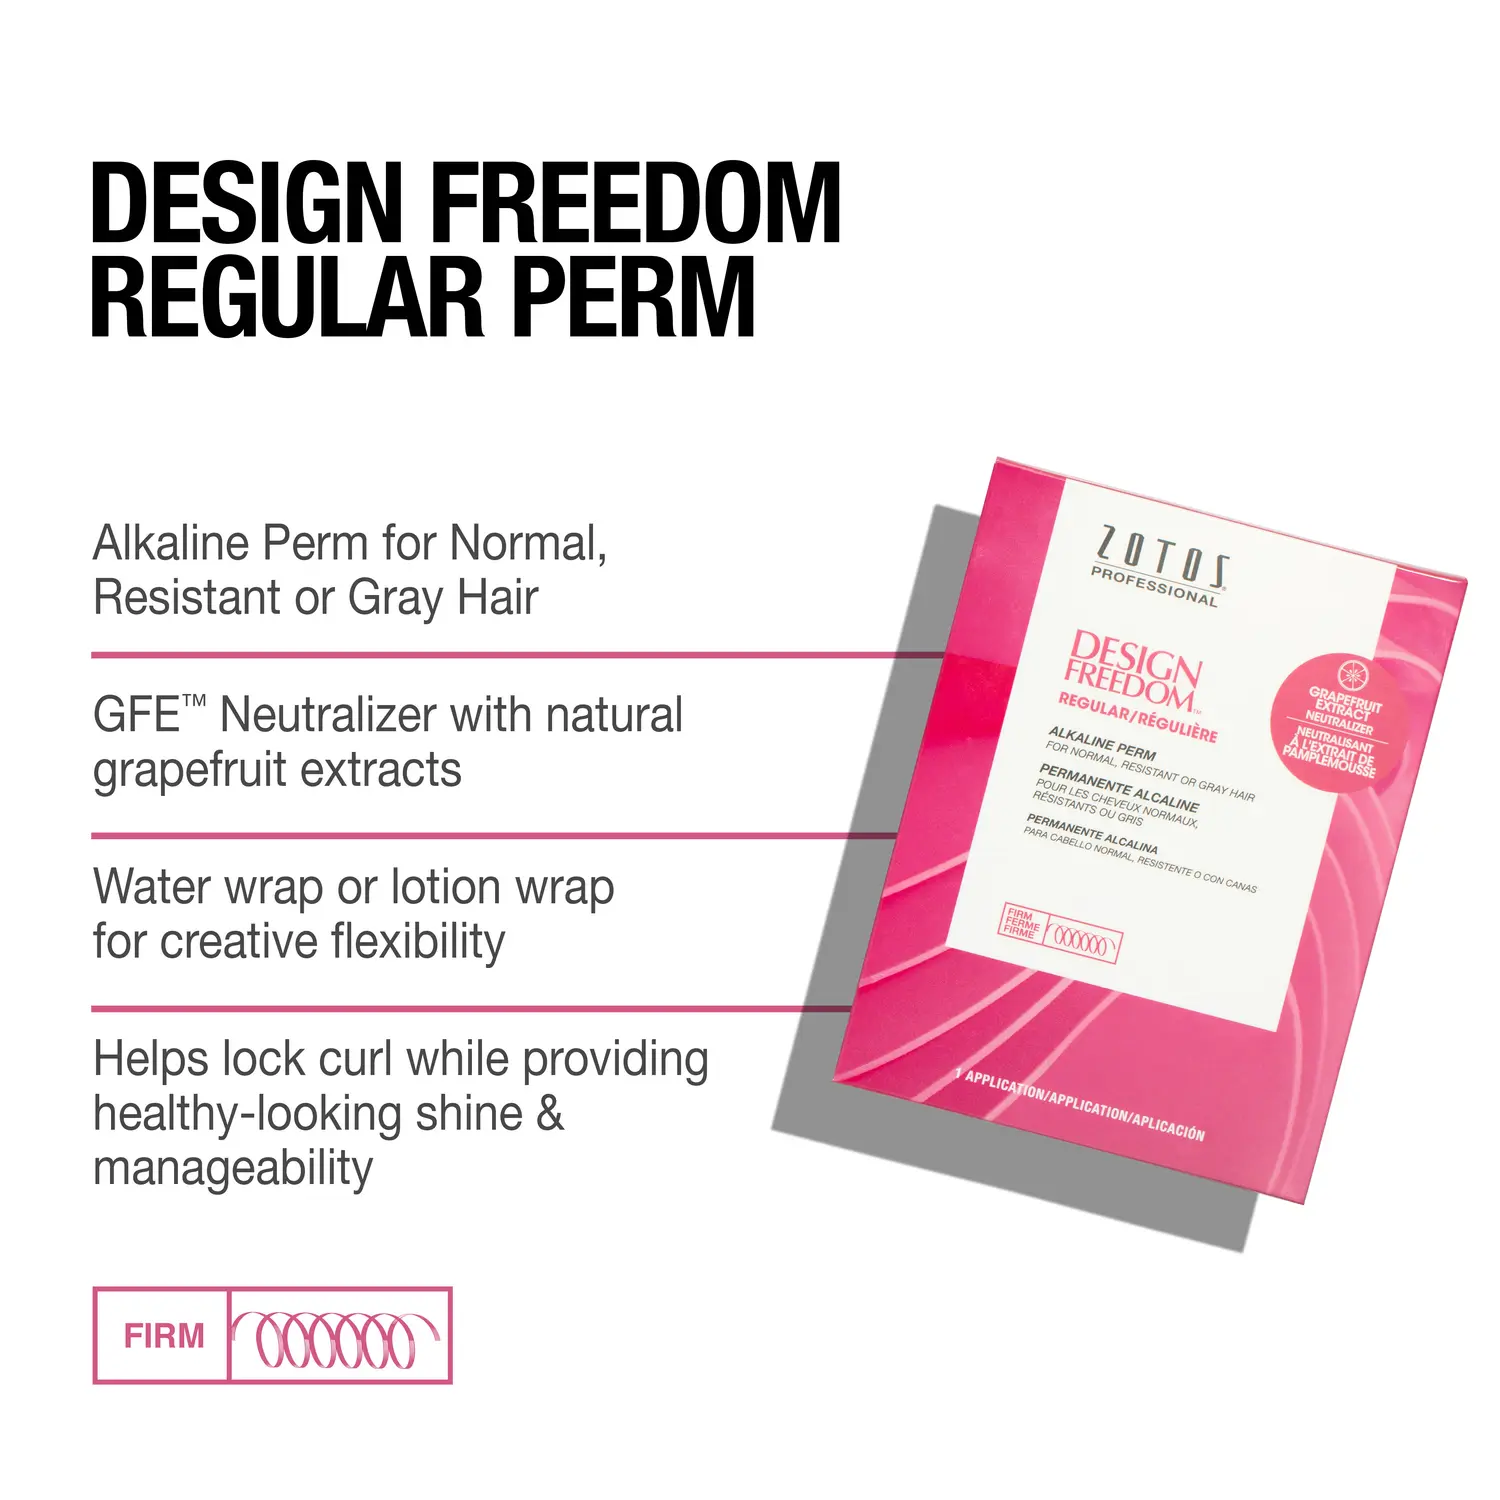 Zotos Design Freedom Regular Alkaline Perm (Firm)